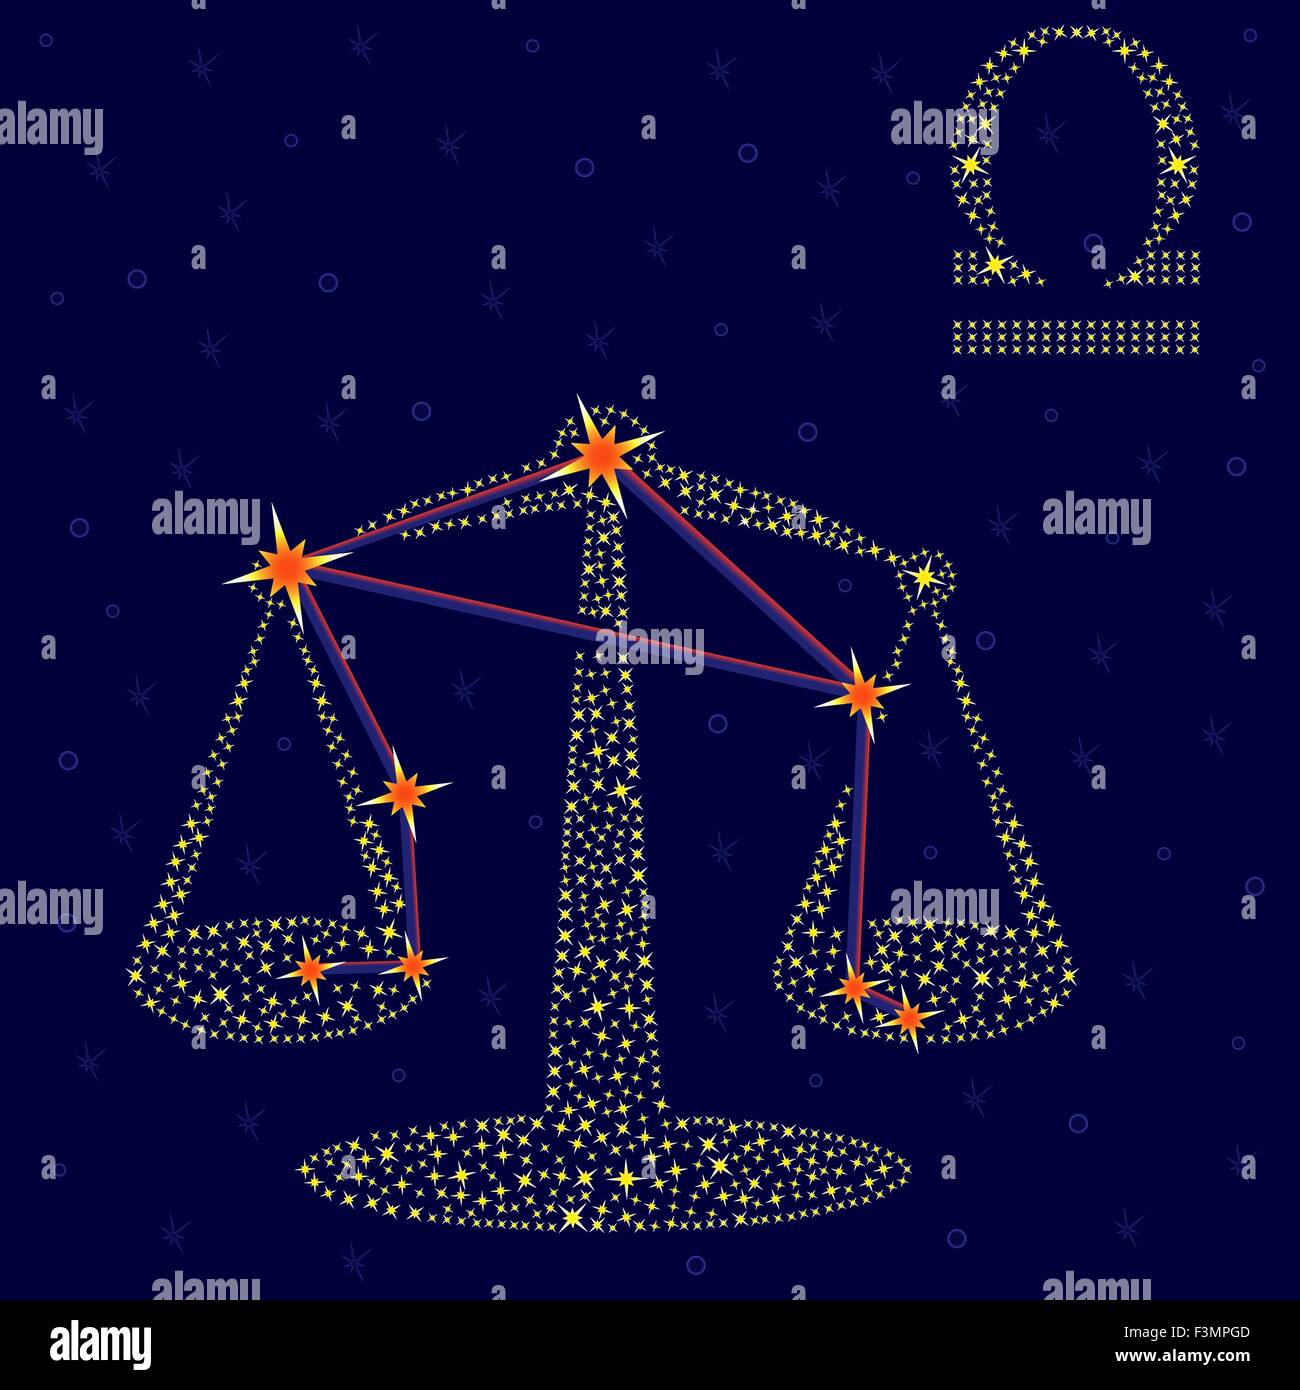 Sternzeichen Waage auf einem Hintergrund von den Sternenhimmel mit dem  Schema von Sternen im Sternbild, Vektor-illustration Stock-Vektorgrafik -  Alamy